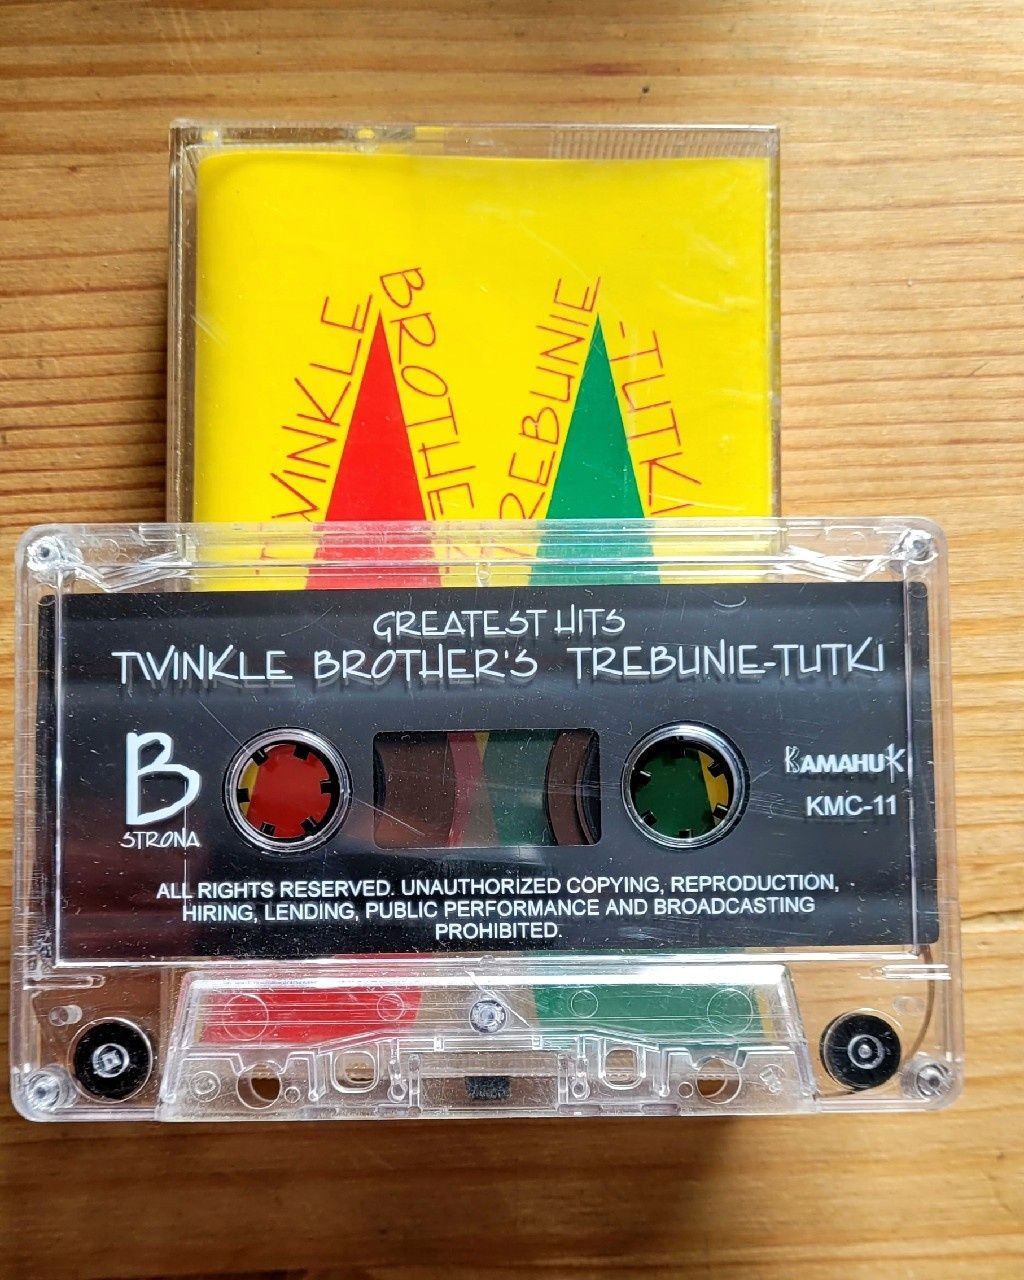 Twinkle Brother's Trebunie-Tutki Greatest hits, kaseta magnetofonowa,